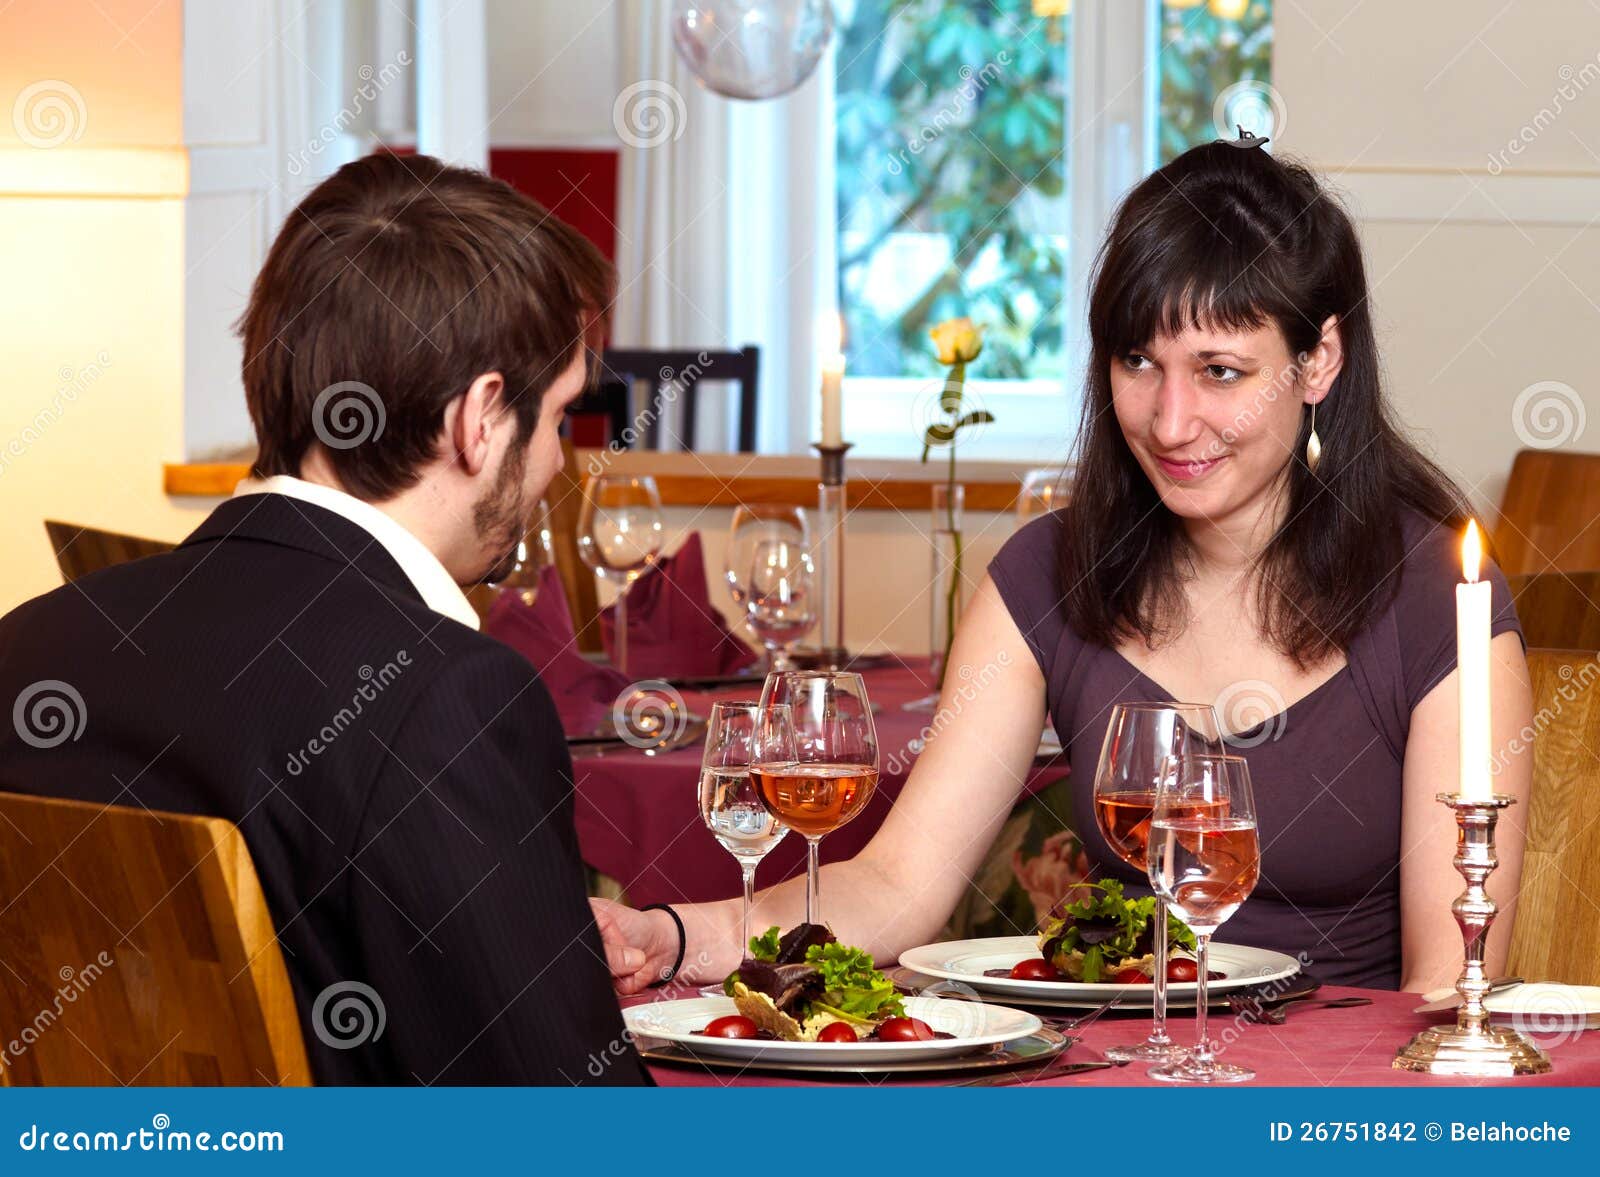 flirting over a romantic dinner